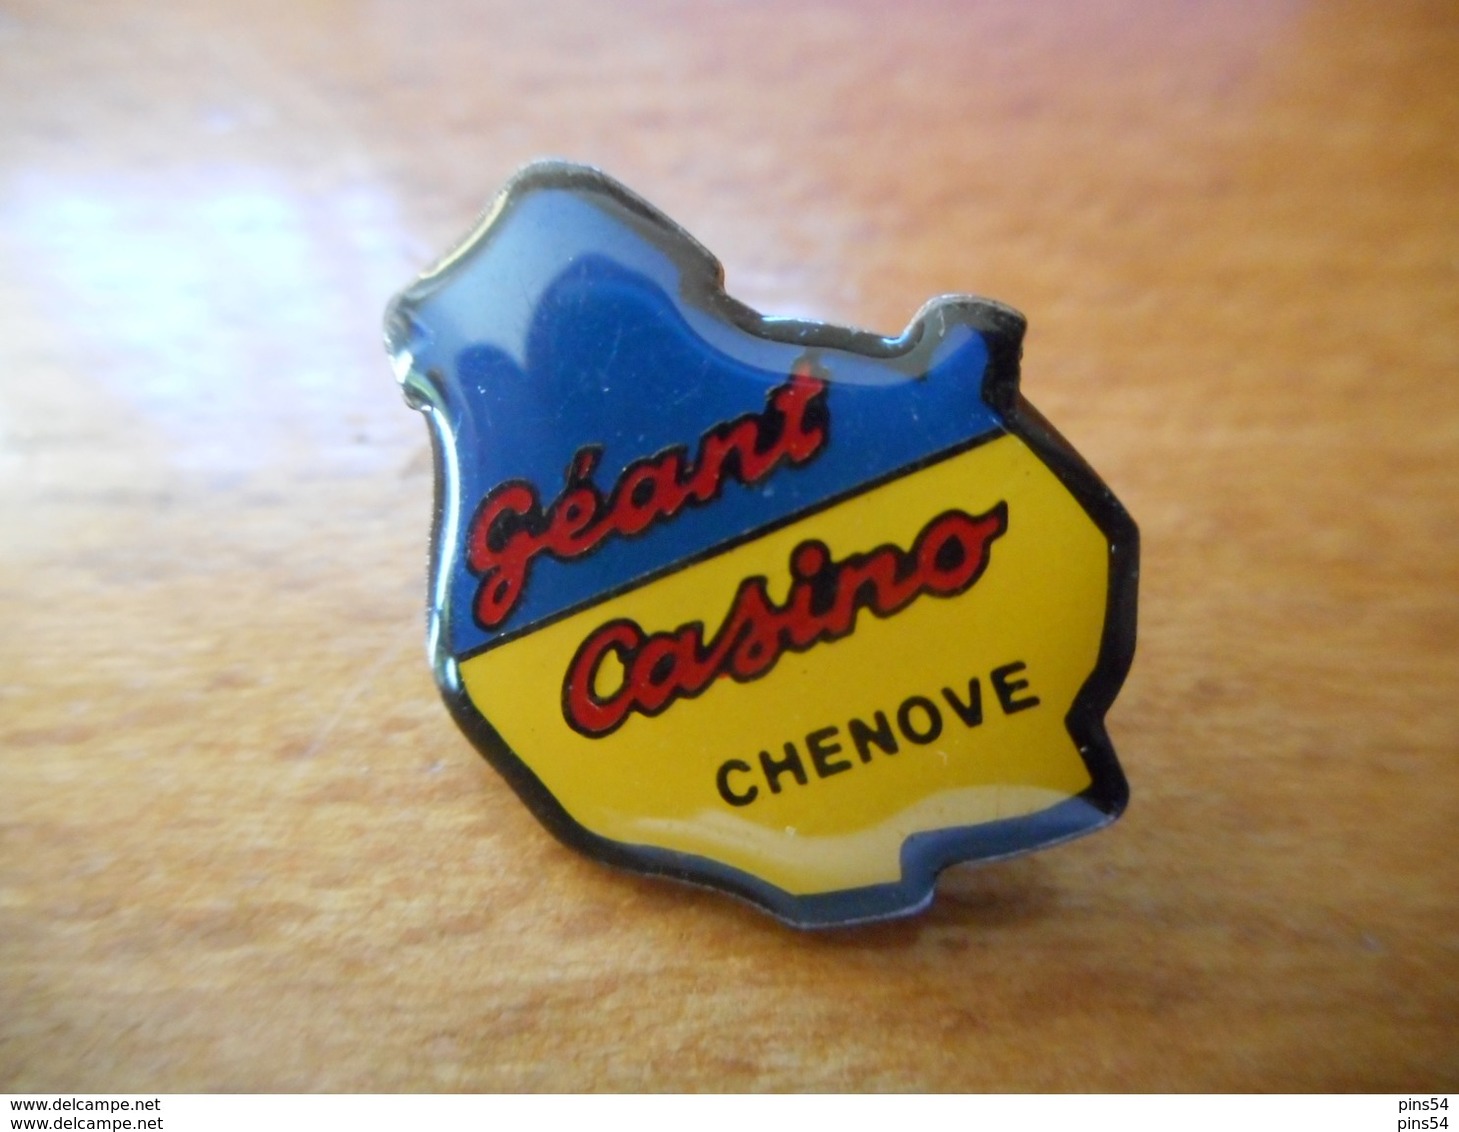 A016 -- Pin's Géant Casino Chenove - Marche